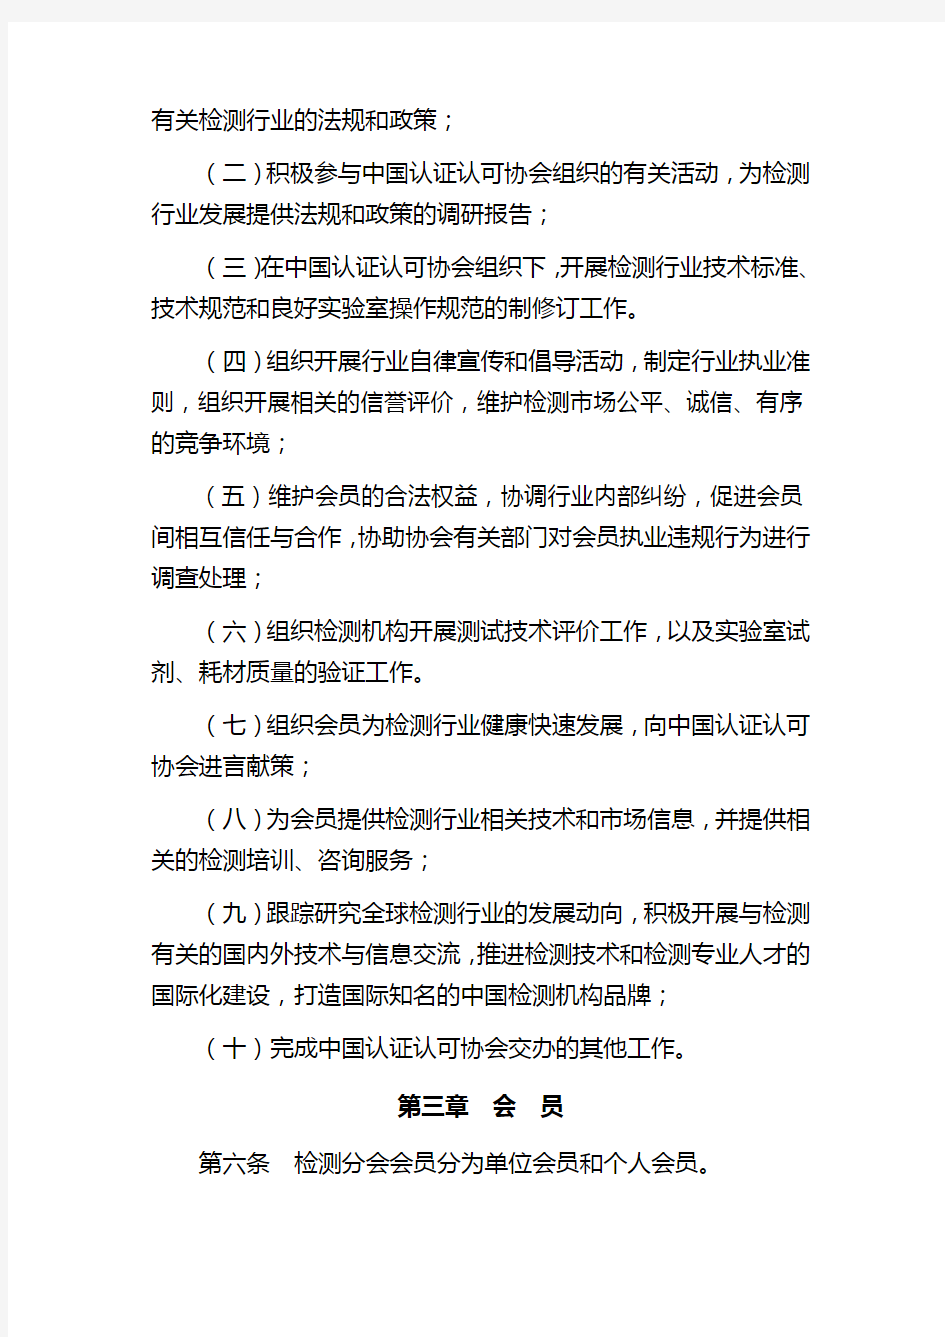 中国认证认可协会检测分会工作规则